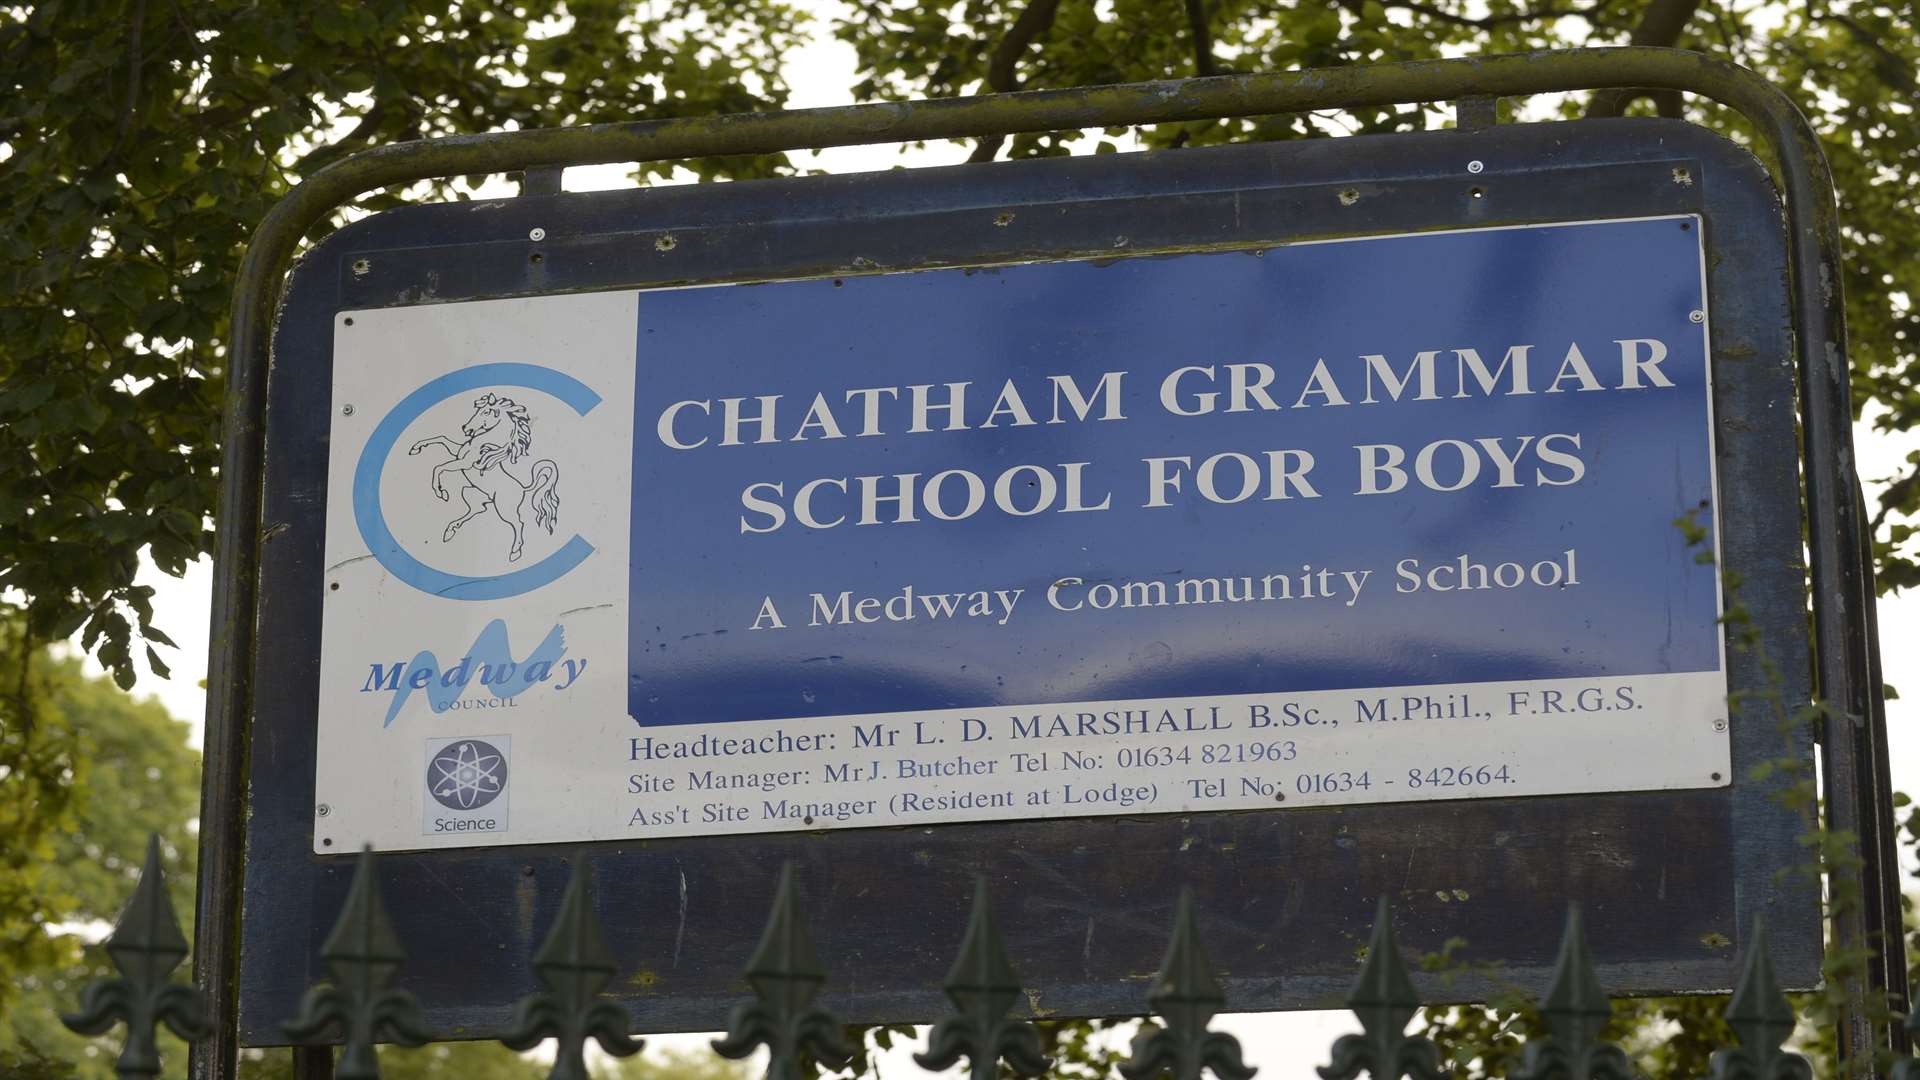 Chatham Grammar School for Boys